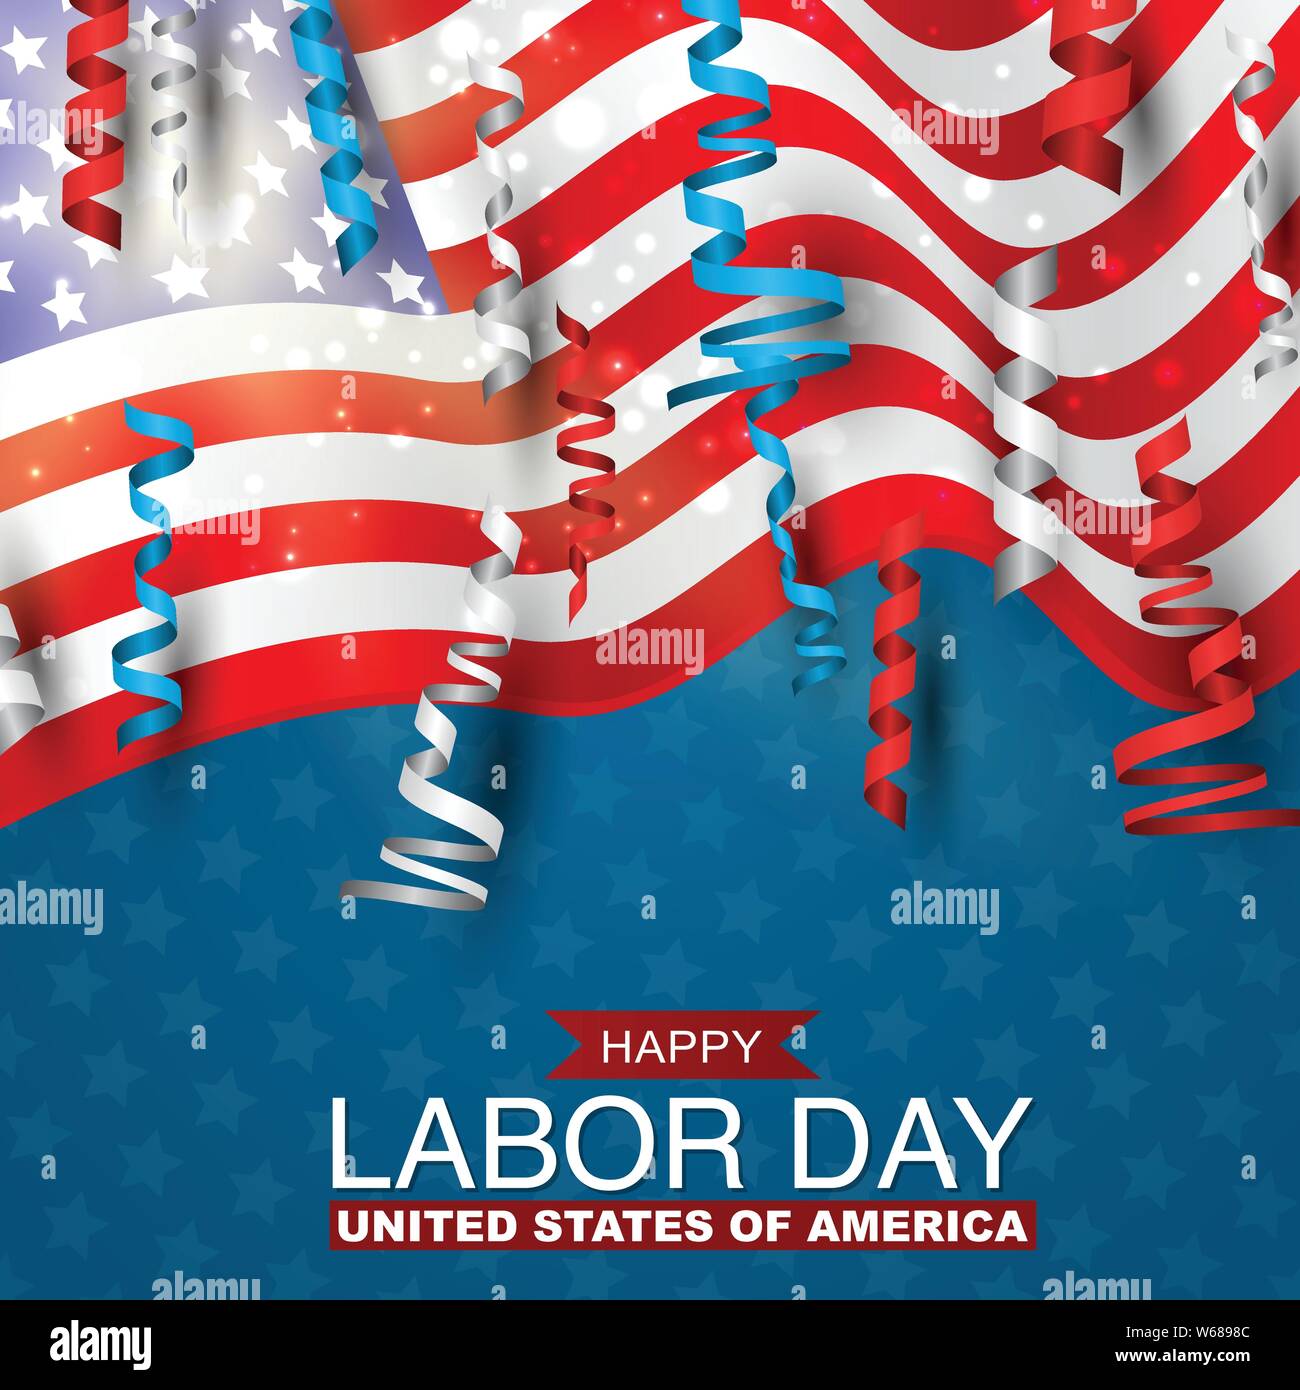 Felice giornata di lavoro con la bandiera degli Stati Uniti e il blu, rossa e bianca boccoli. Gli Stati Uniti vacanza nazionale. Illustrazione Vettoriale. Illustrazione Vettoriale